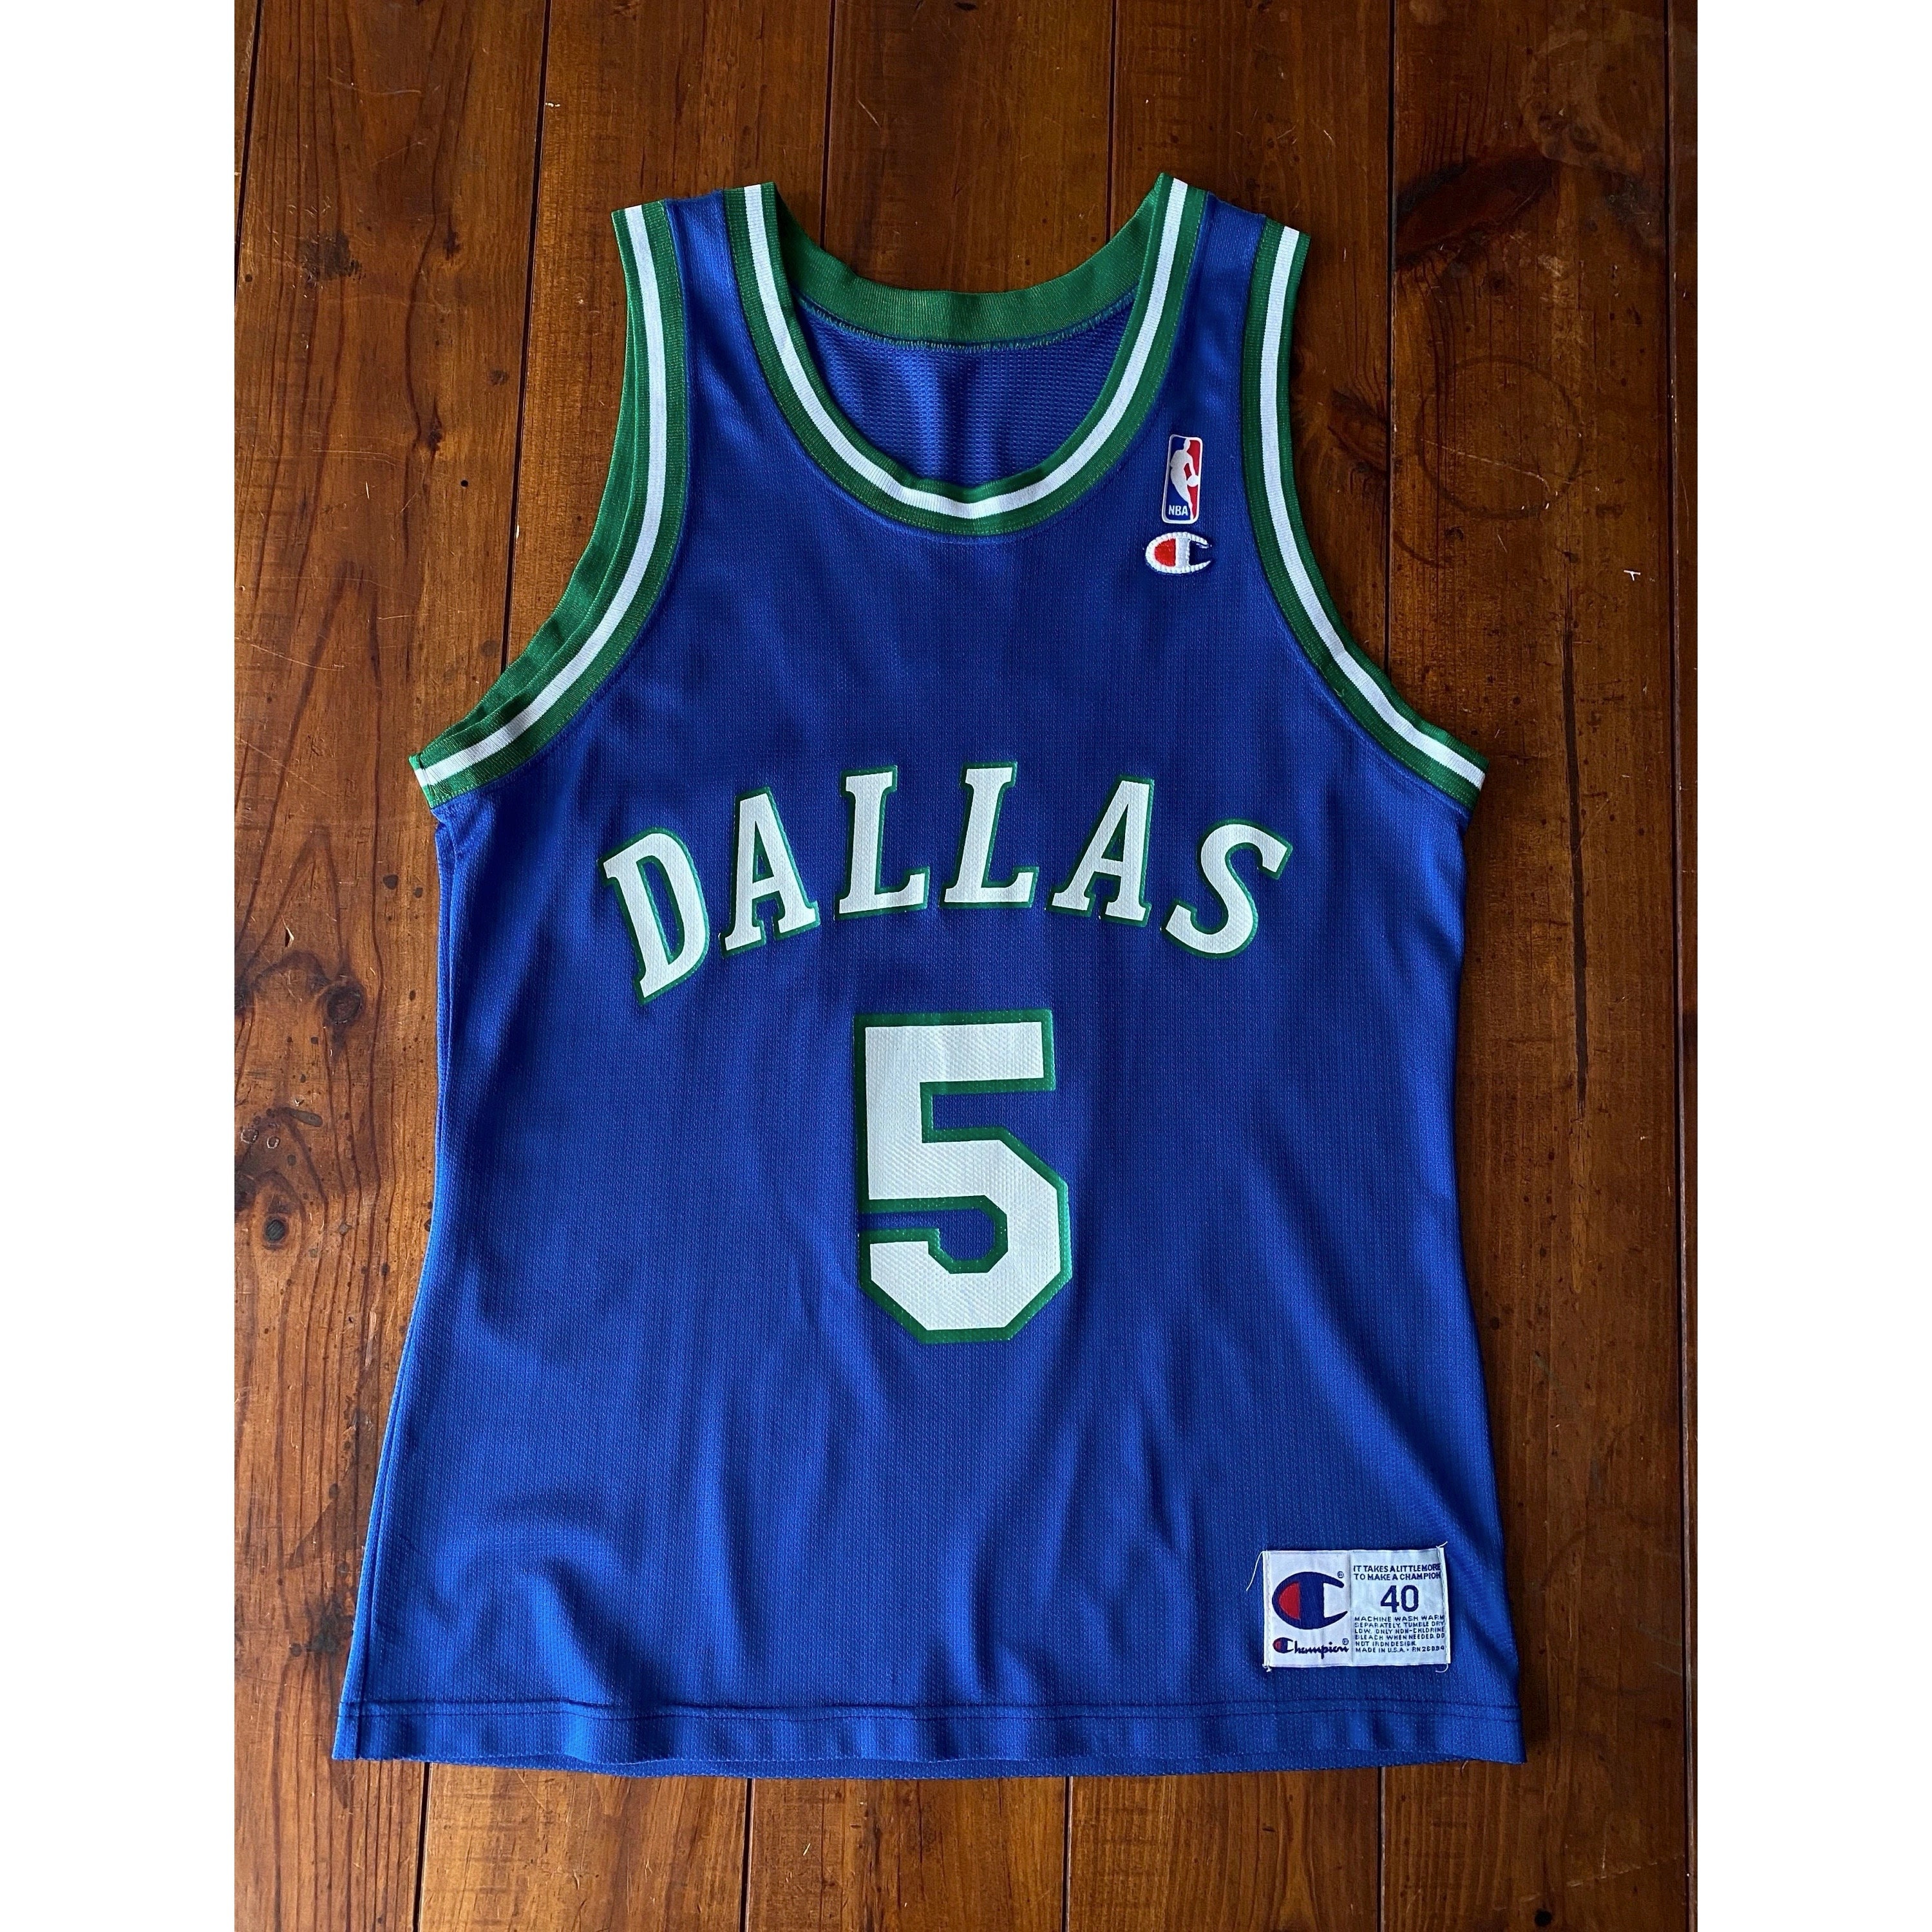 Size 40. VTG NBA Champion Dallas 5 Kidd Made in -